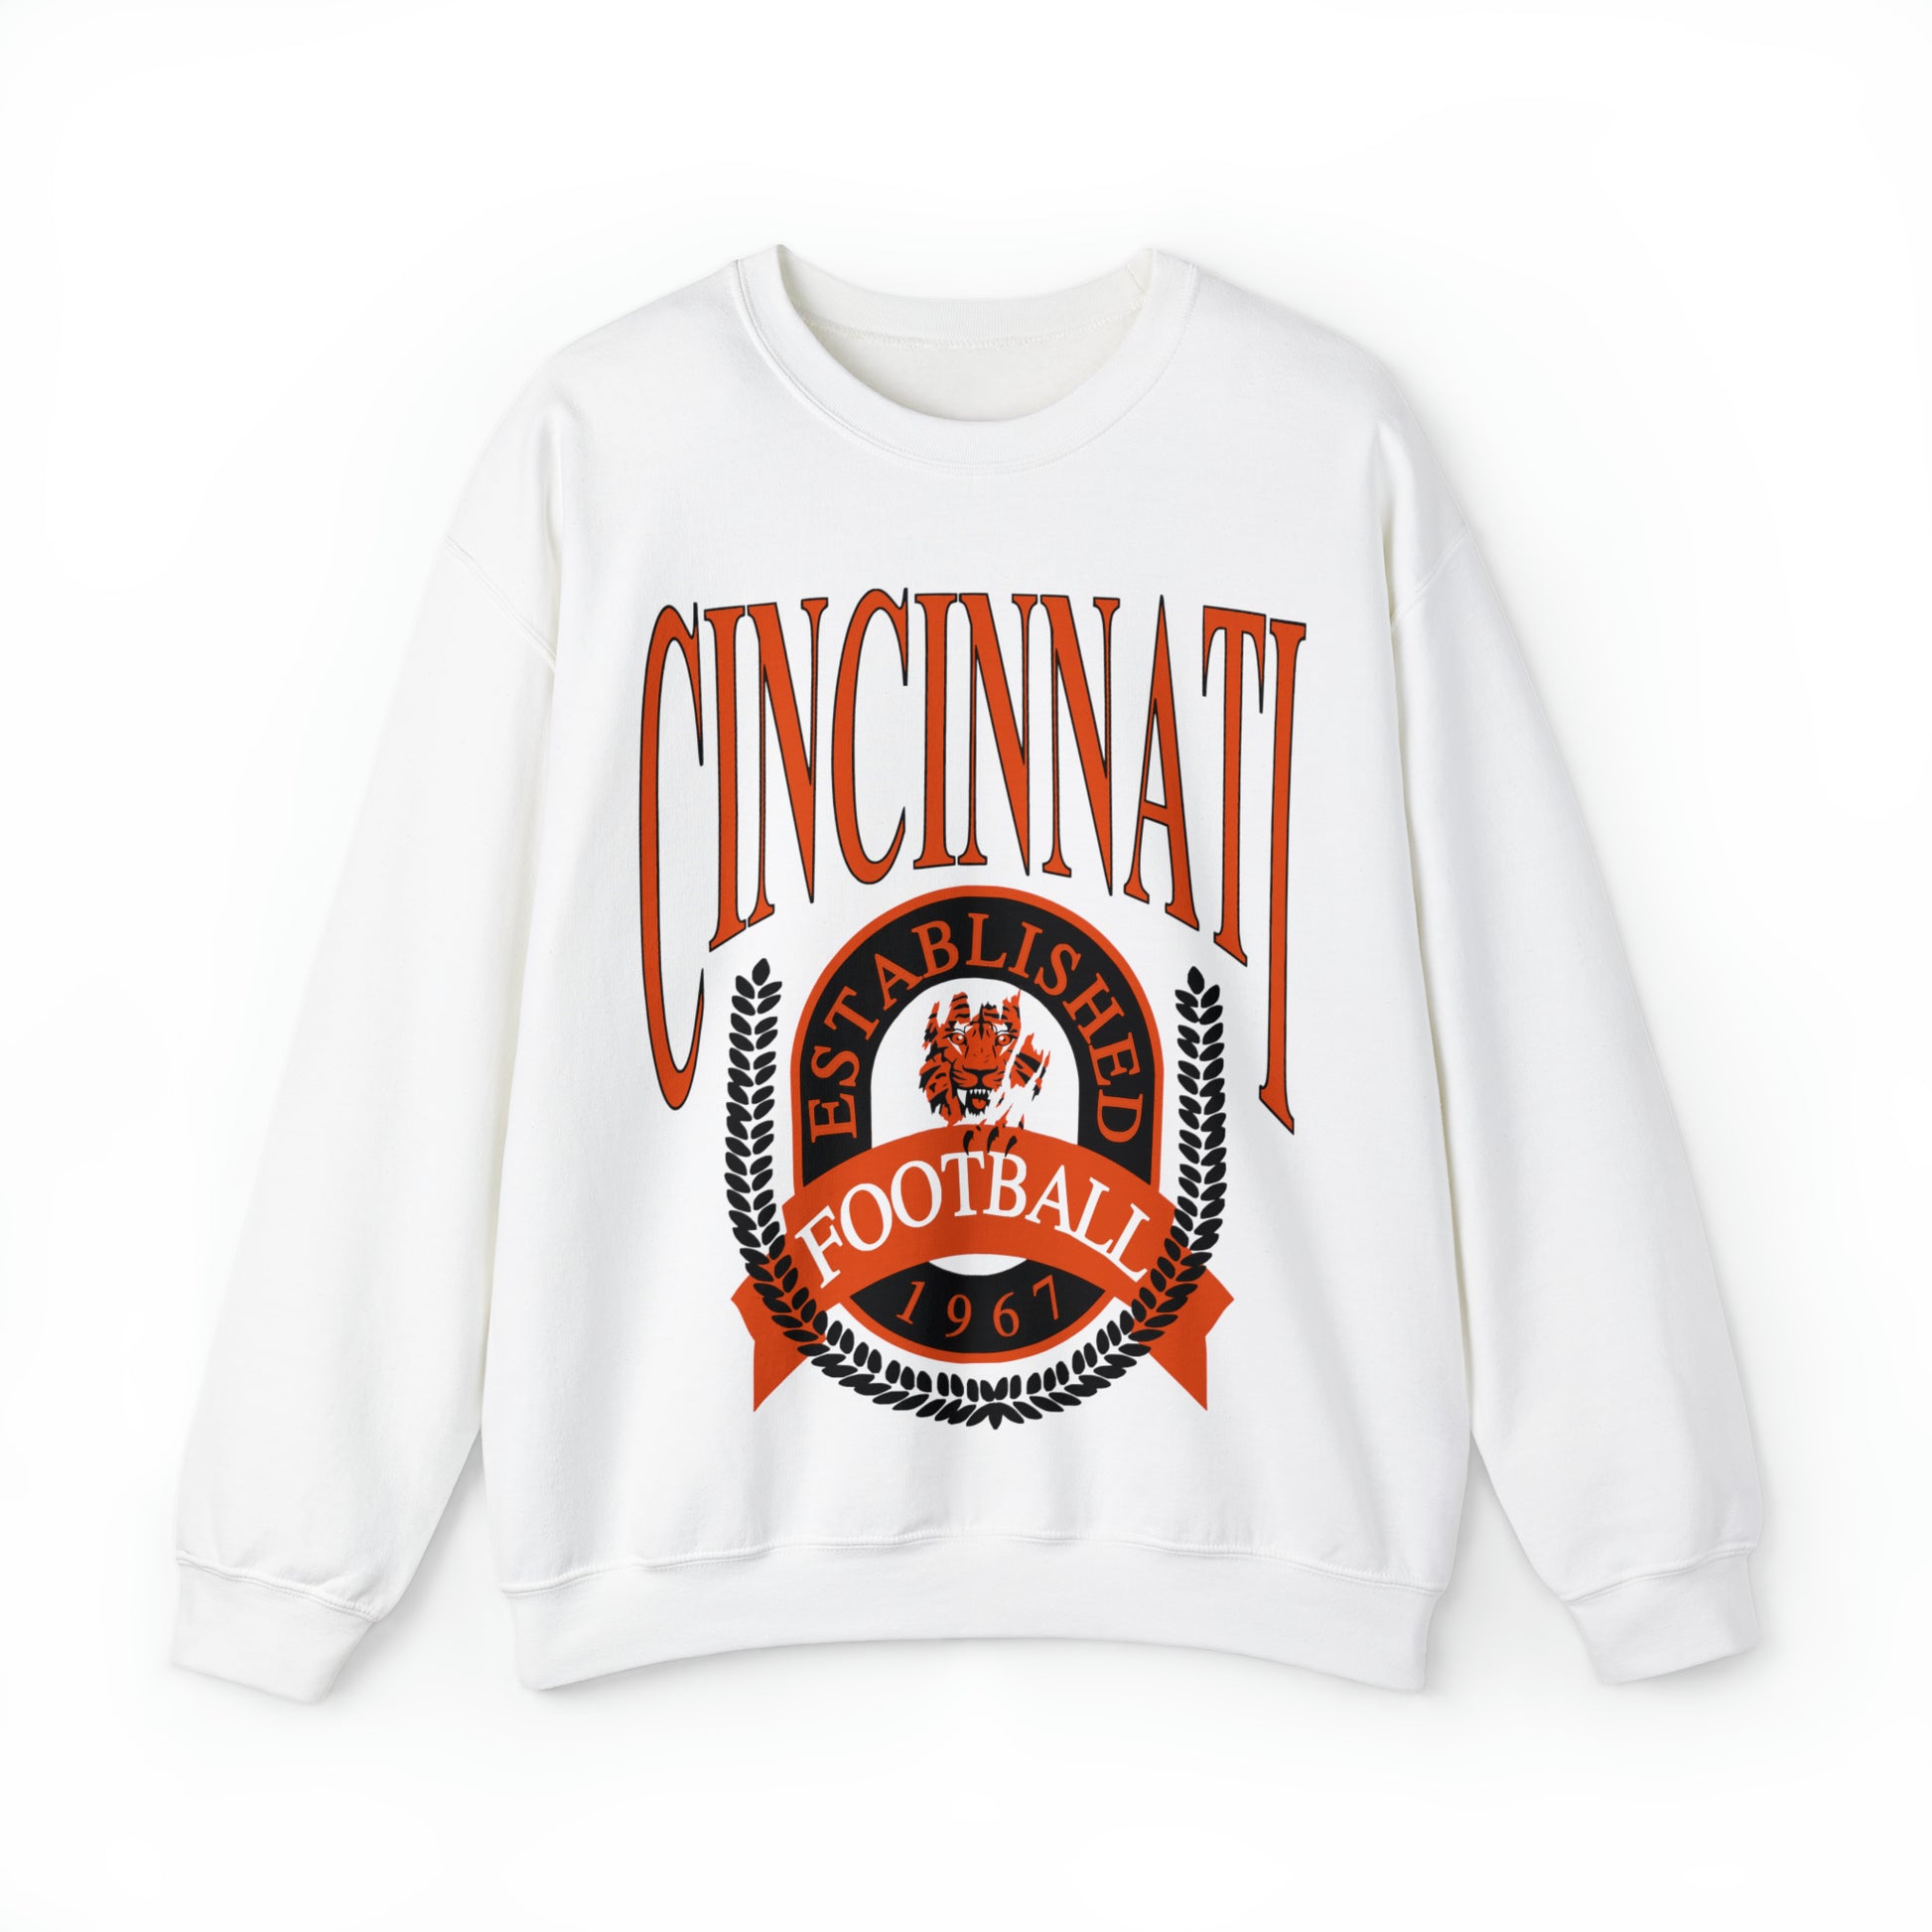 Vintage Cincinnati Bengals Crewneck Sweatshirt - Retro Men's & Women's Oversized NFL Football Unisex Hoodie - Design 1 White